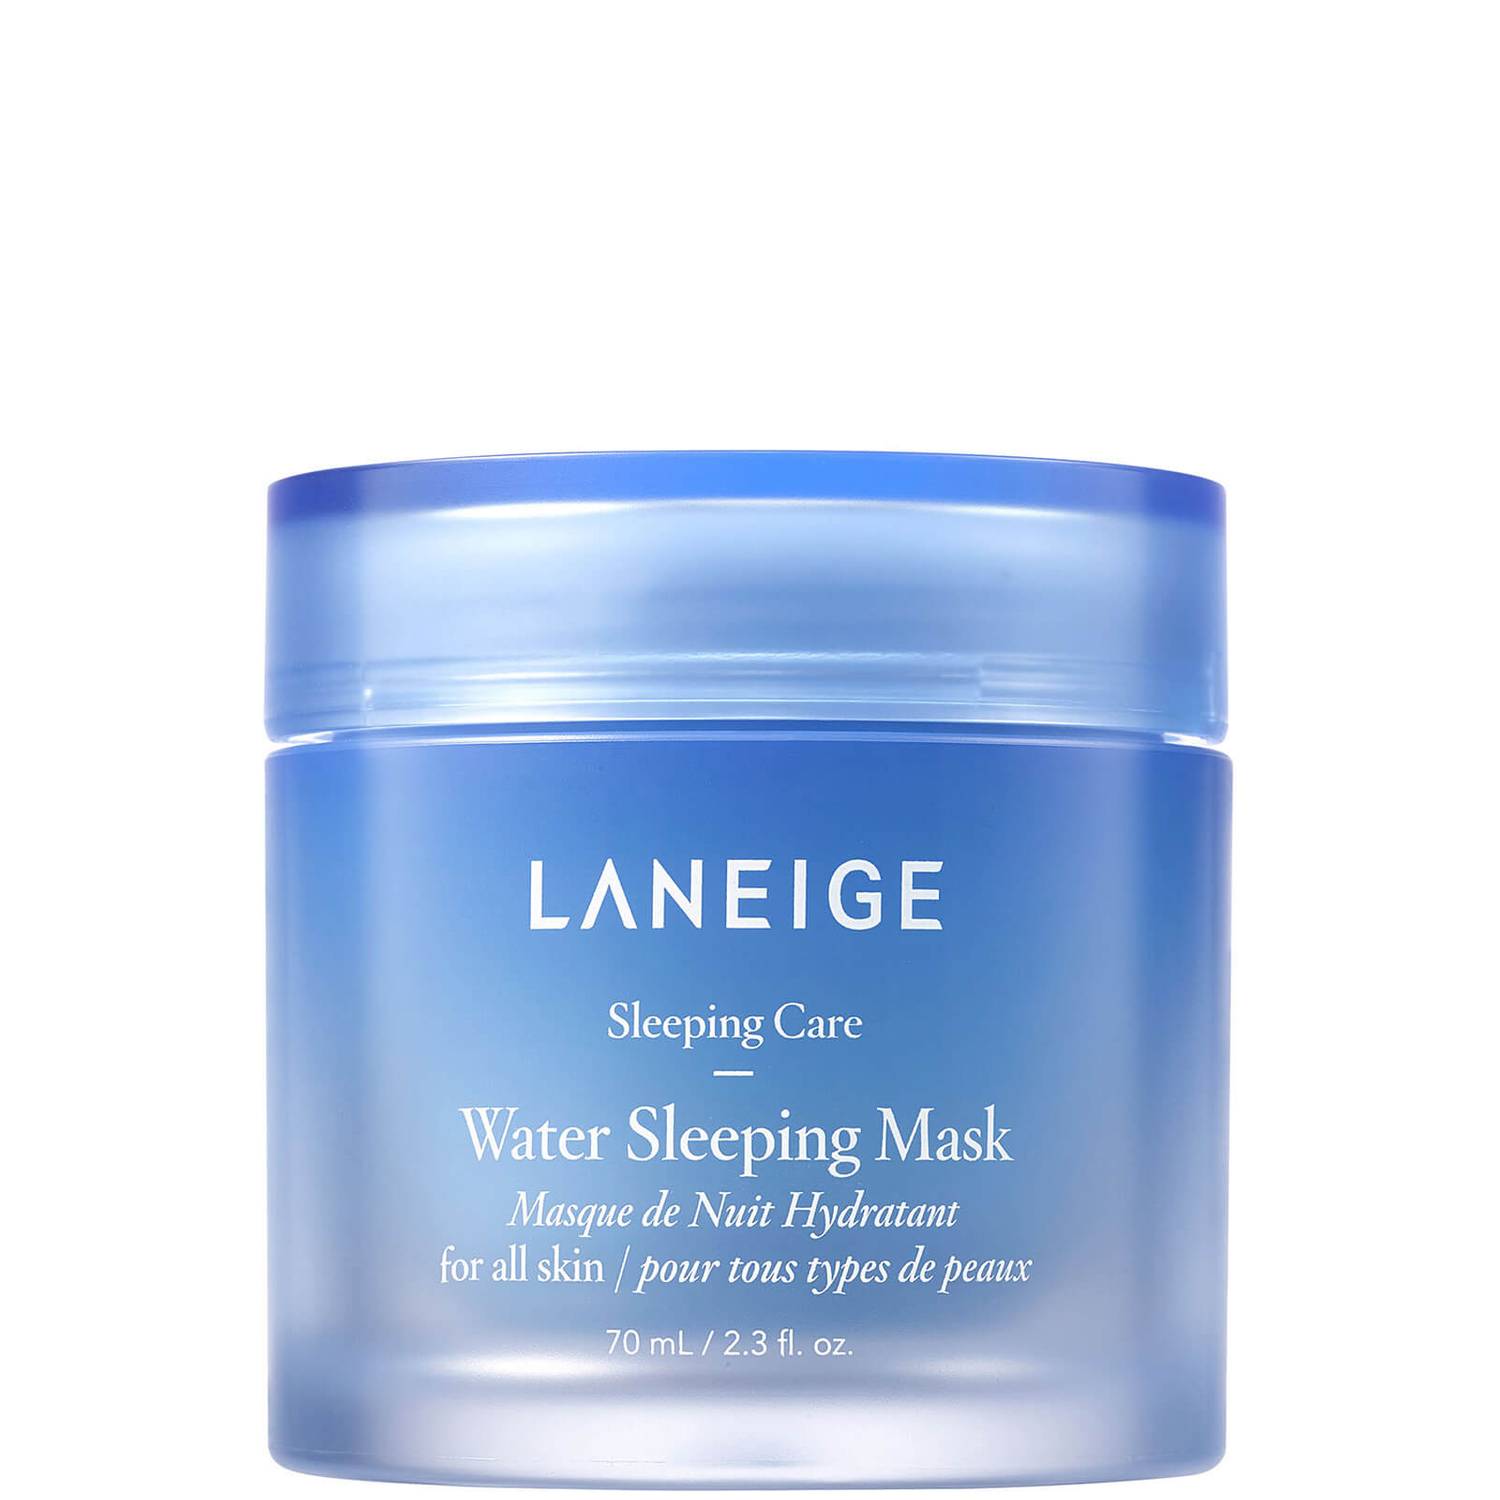 Laneige, Water Sleeping Mask (Source: www.cultbeauty.com)